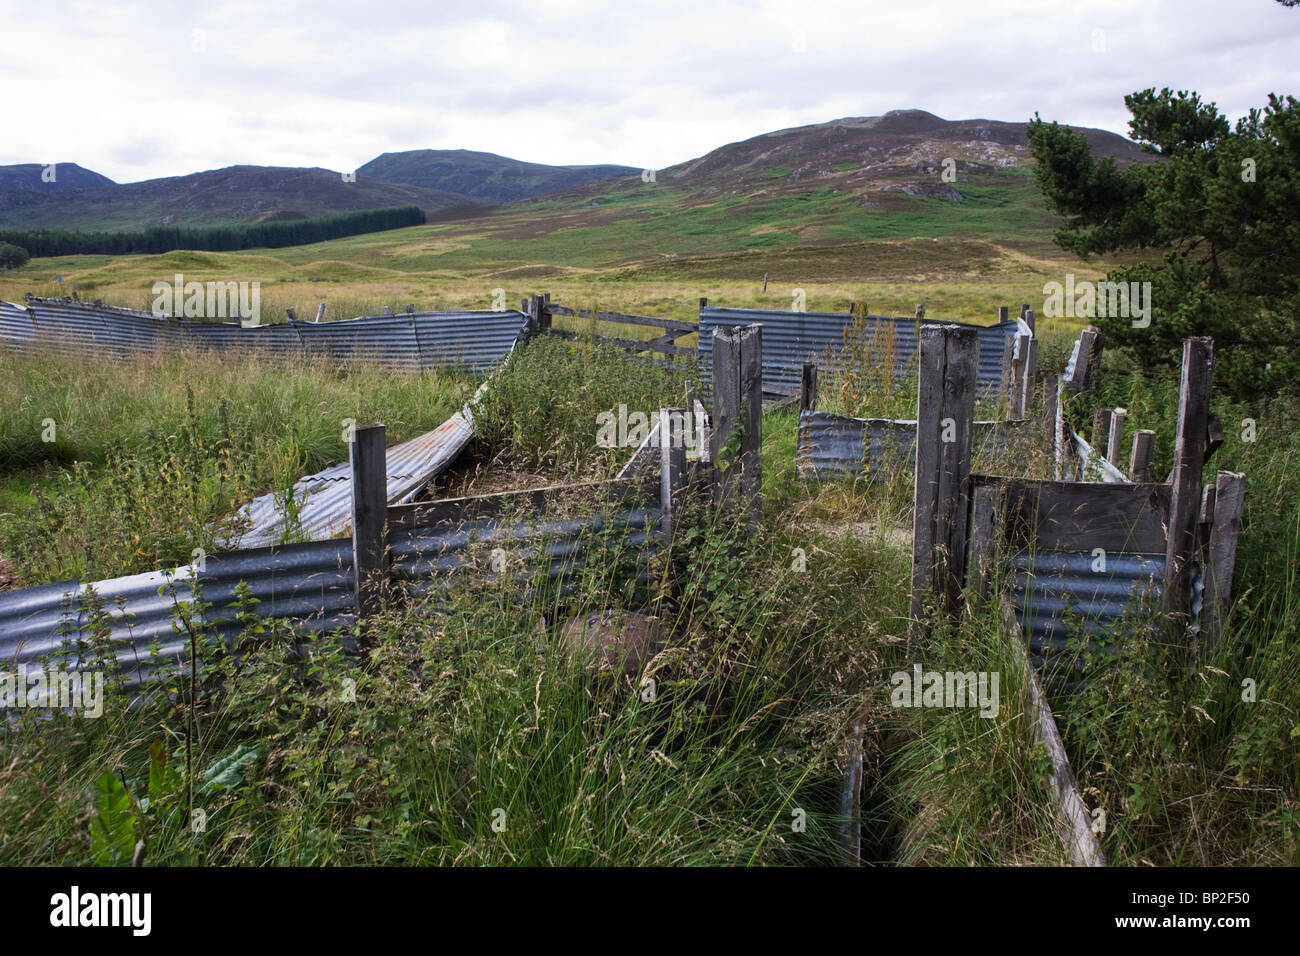 Tôles ondulées rouillées abandonnées dans des enclos de ferme d'élevage dans la région de Glen Bauchor, Newtonmore, en Écosse. Banque D'Images